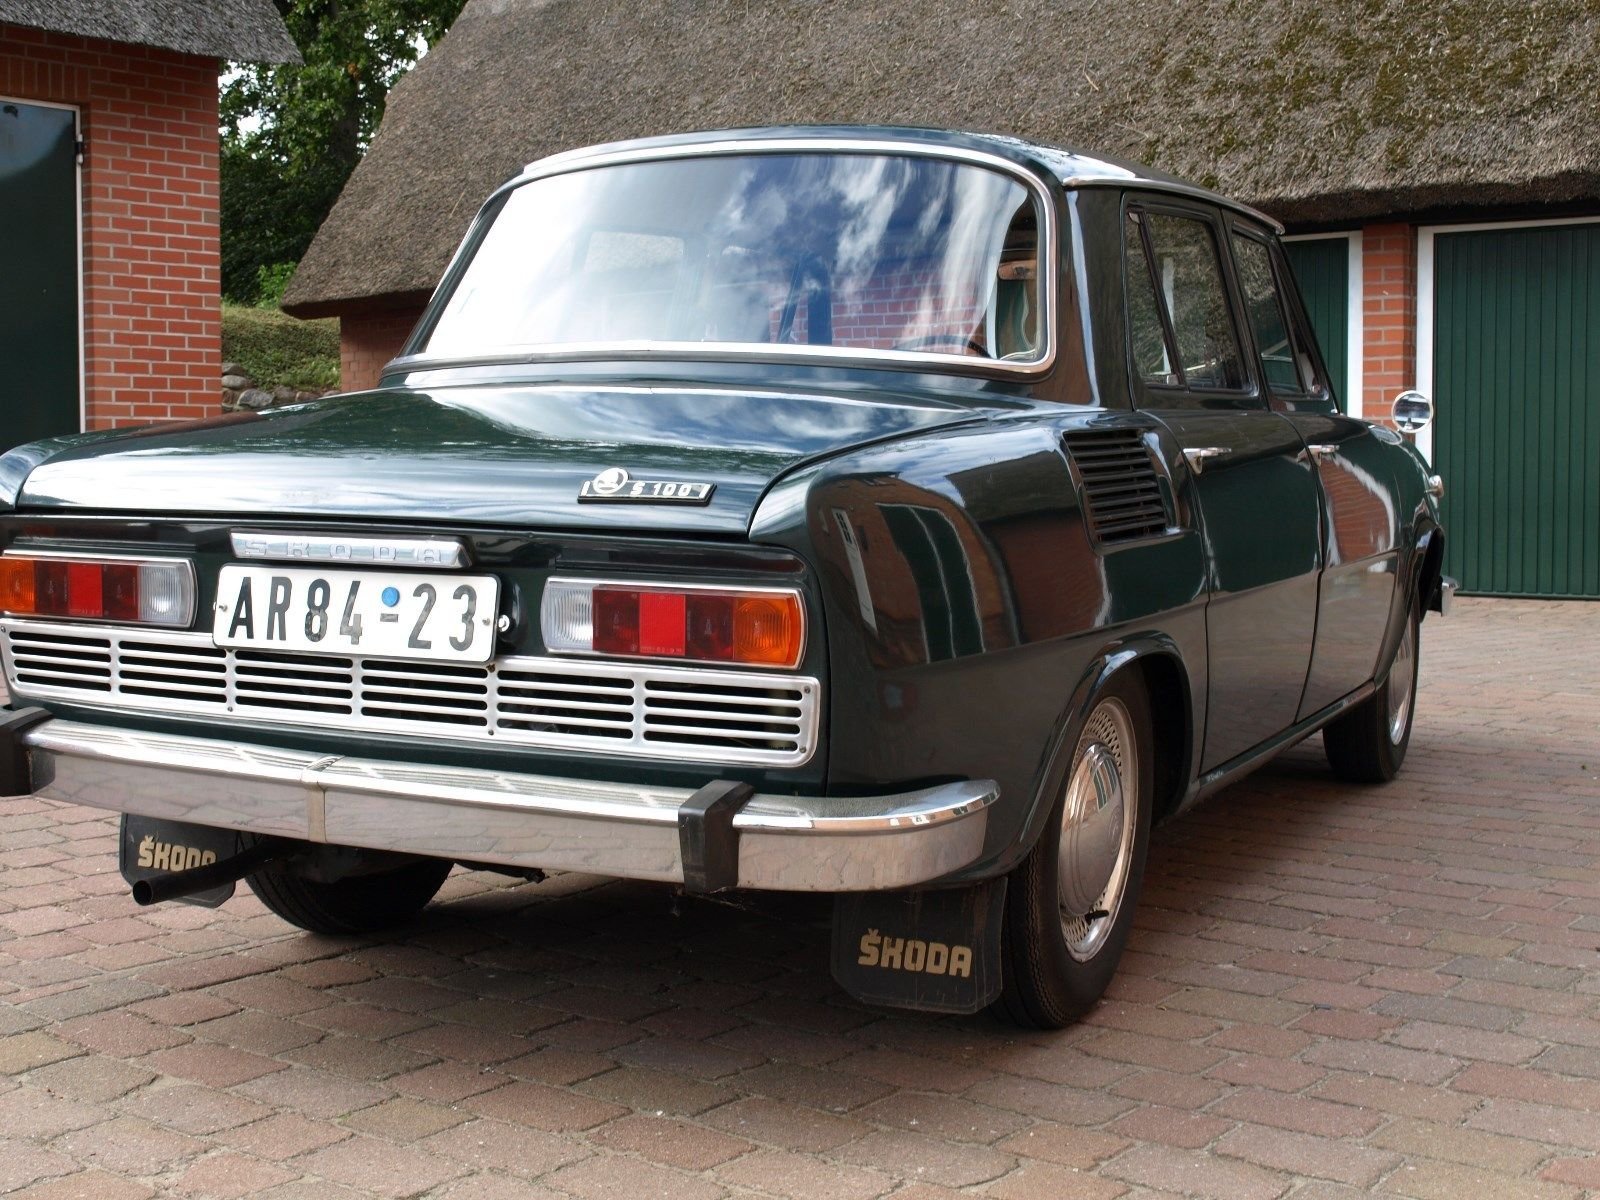 Na prodej je nyní úžasně zachovalá Škoda 100.